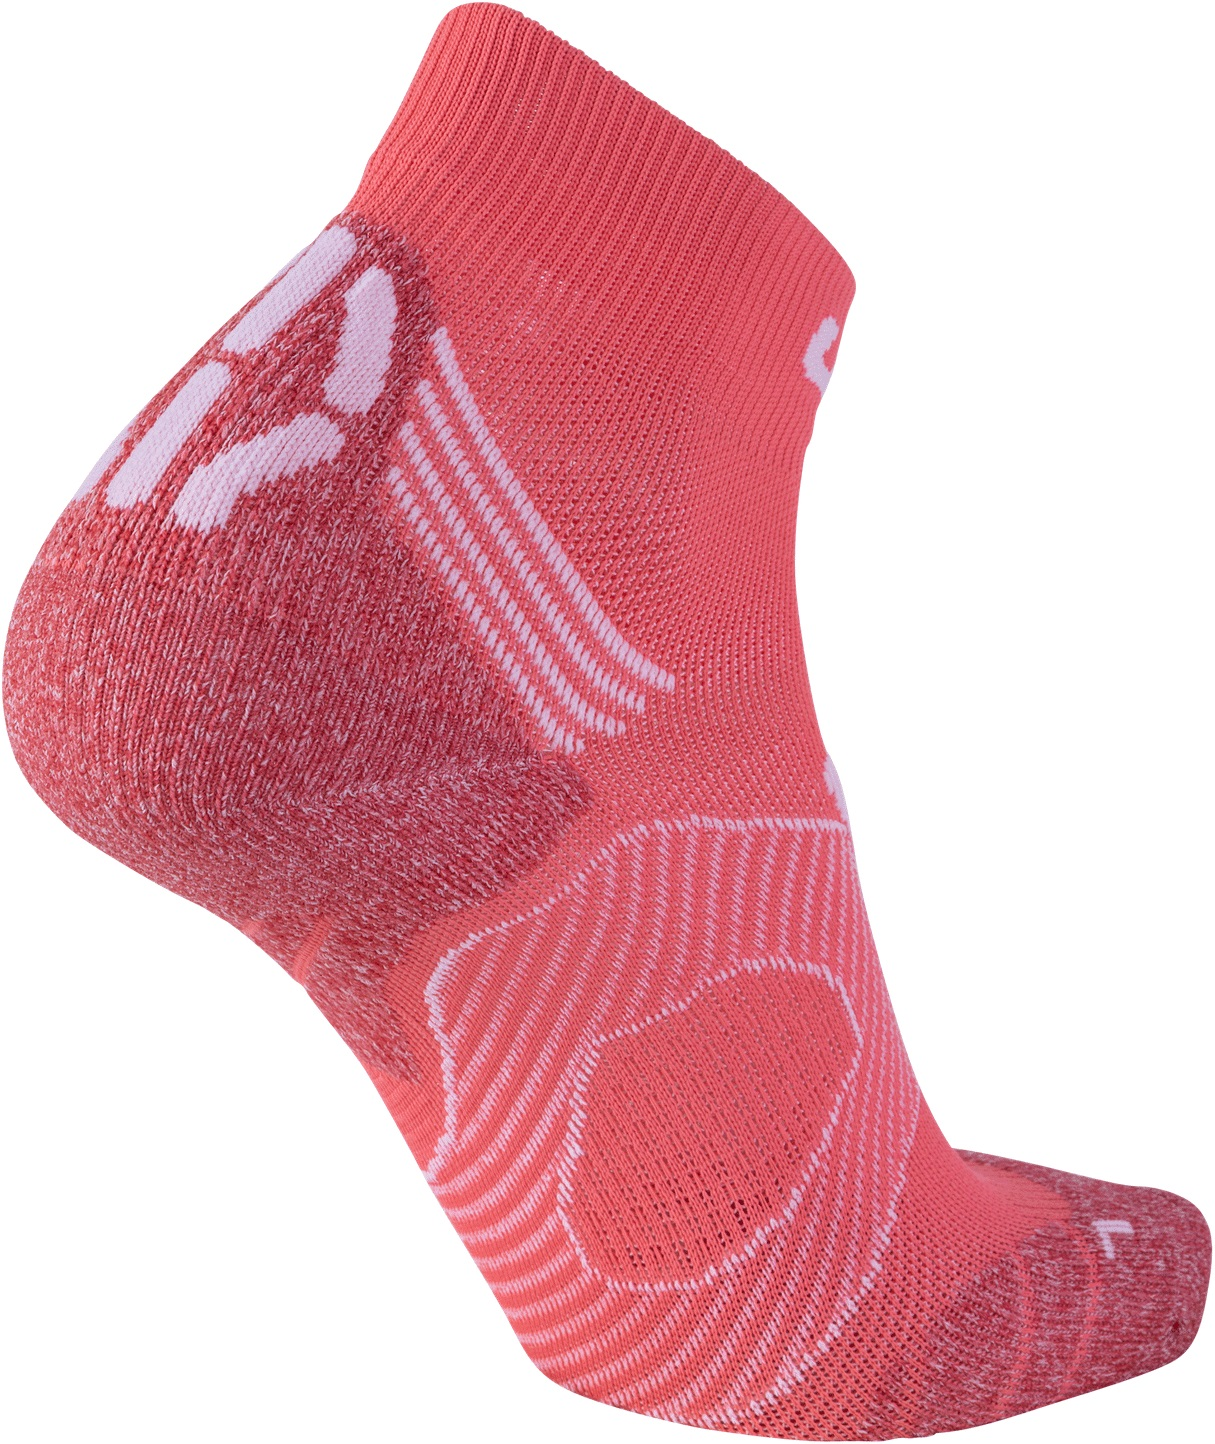 Ponožky UYN LADY RUN SUPER FAST - koralová/biela